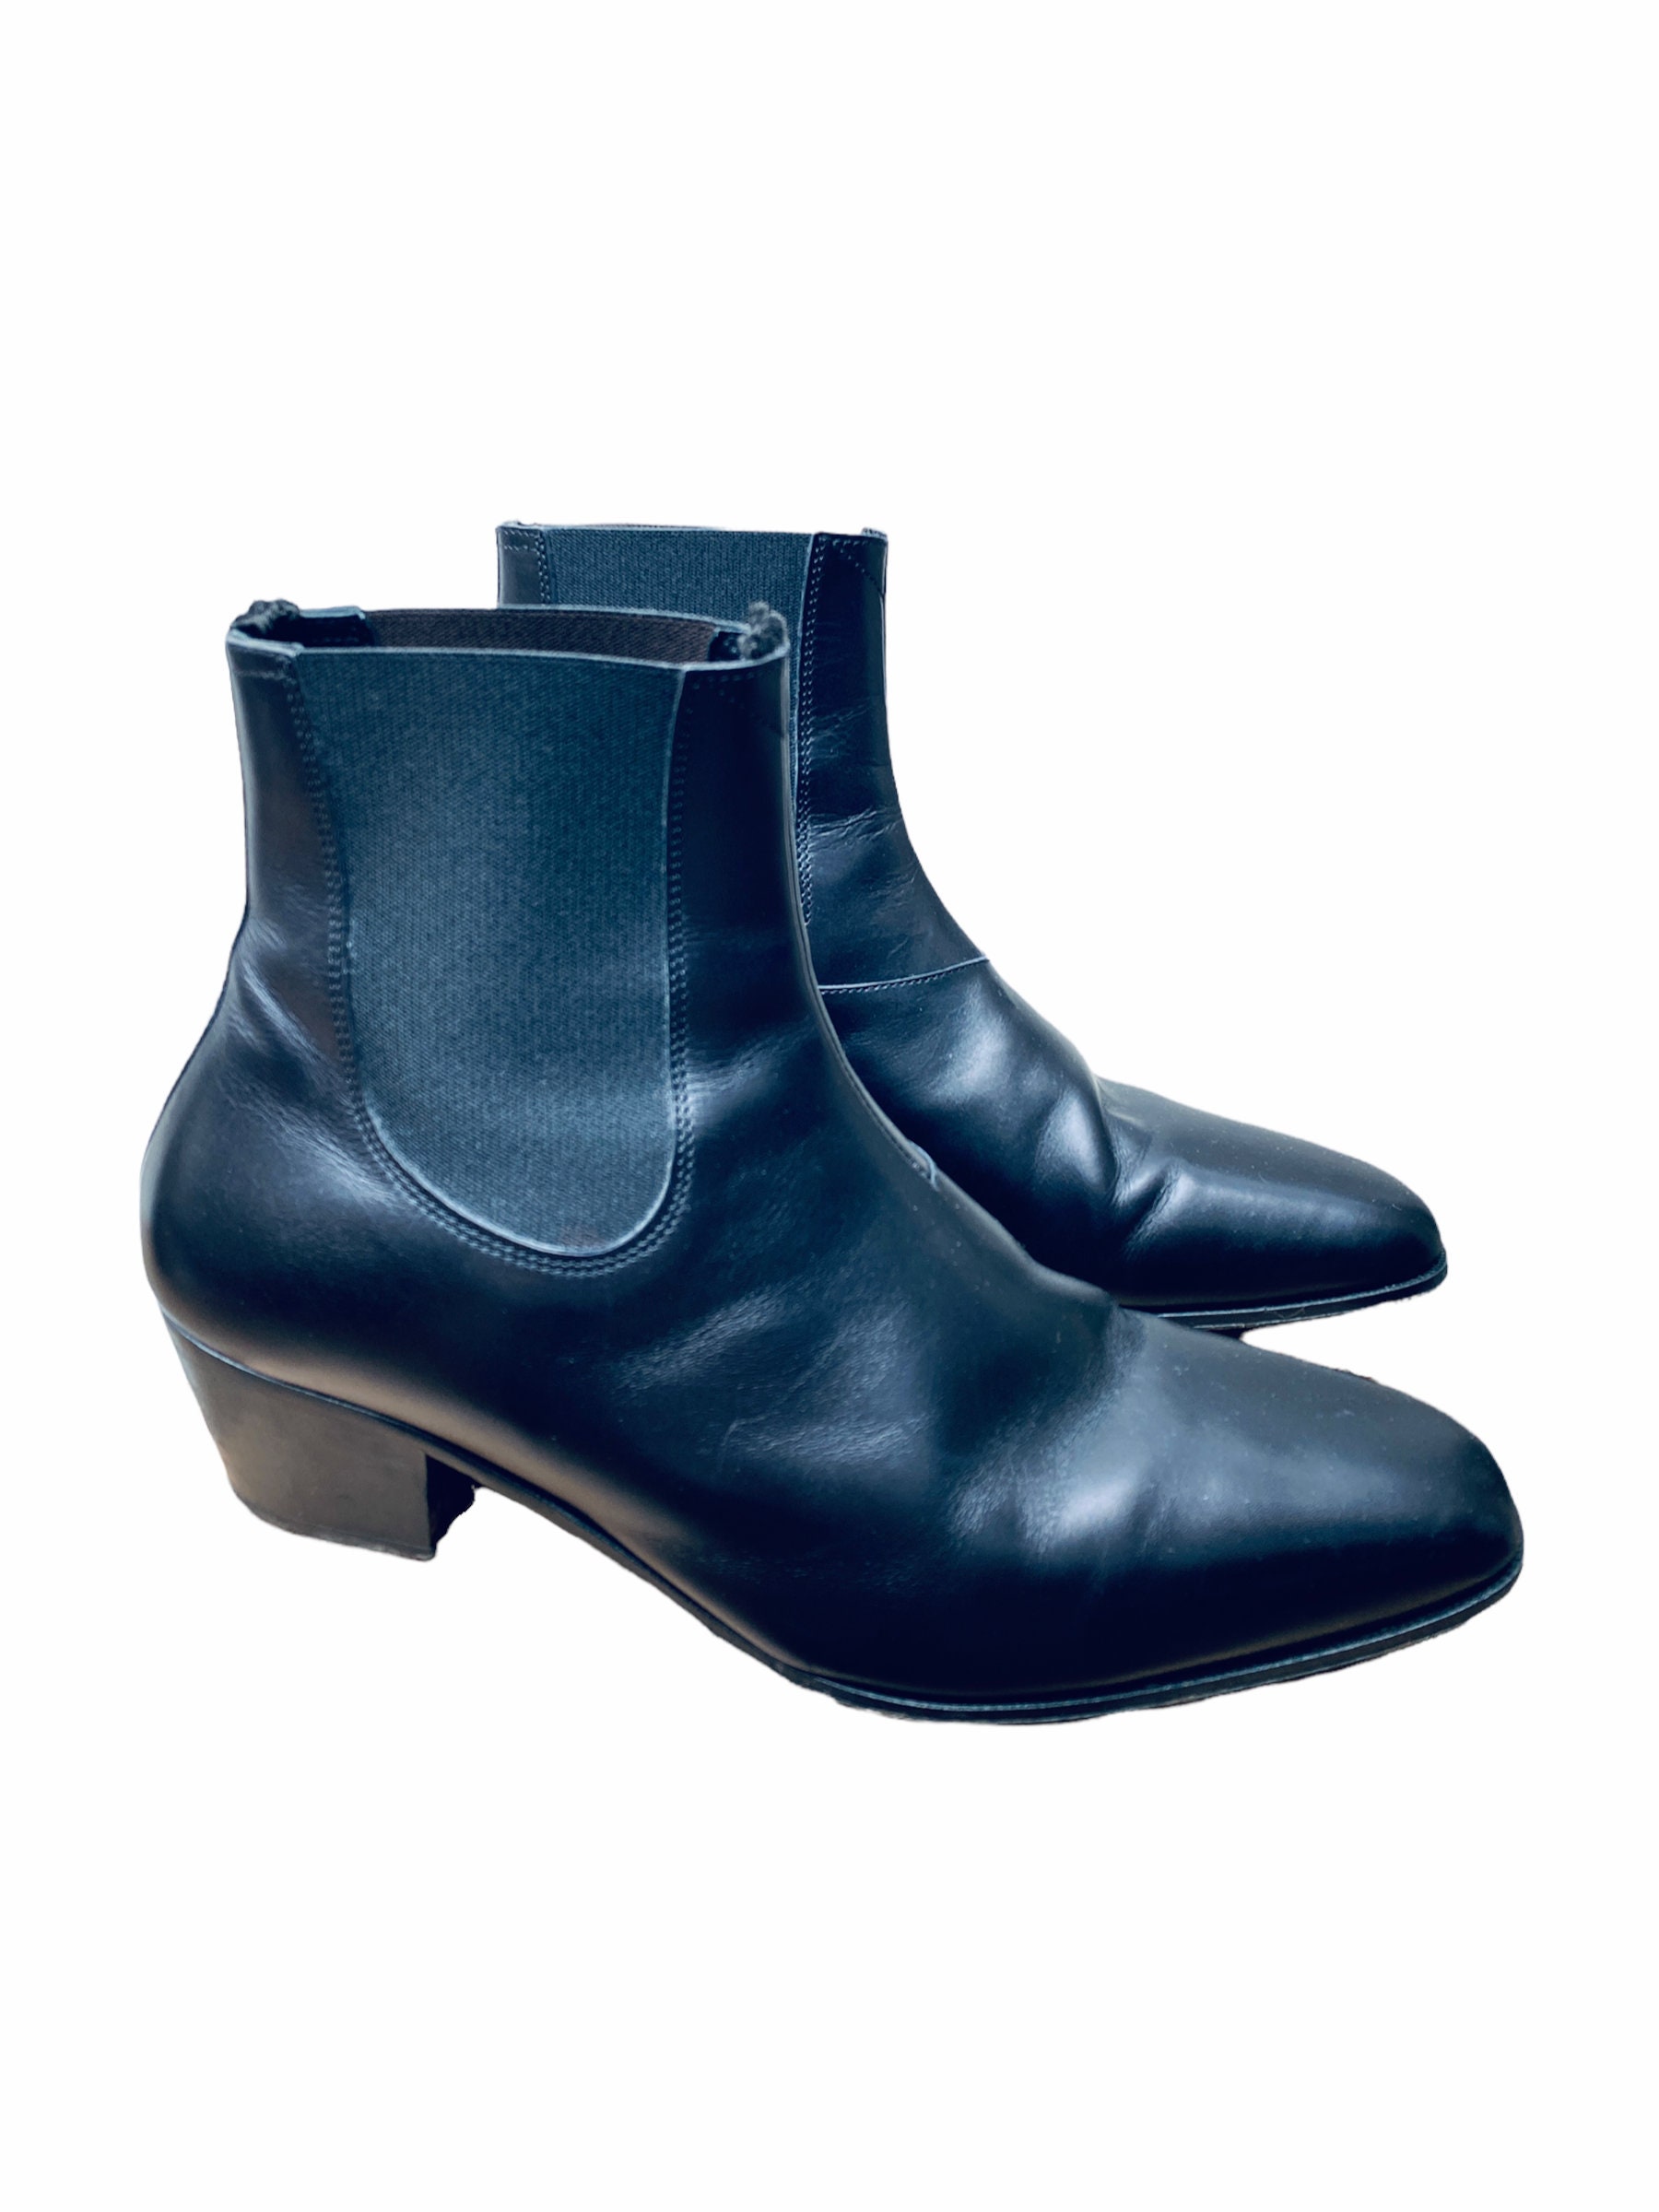 Schoenen damesschoenen Laarzen Rijlaarzen Vtg FRYE Women's Boots 6.5M Brown Leather PULL TABS 